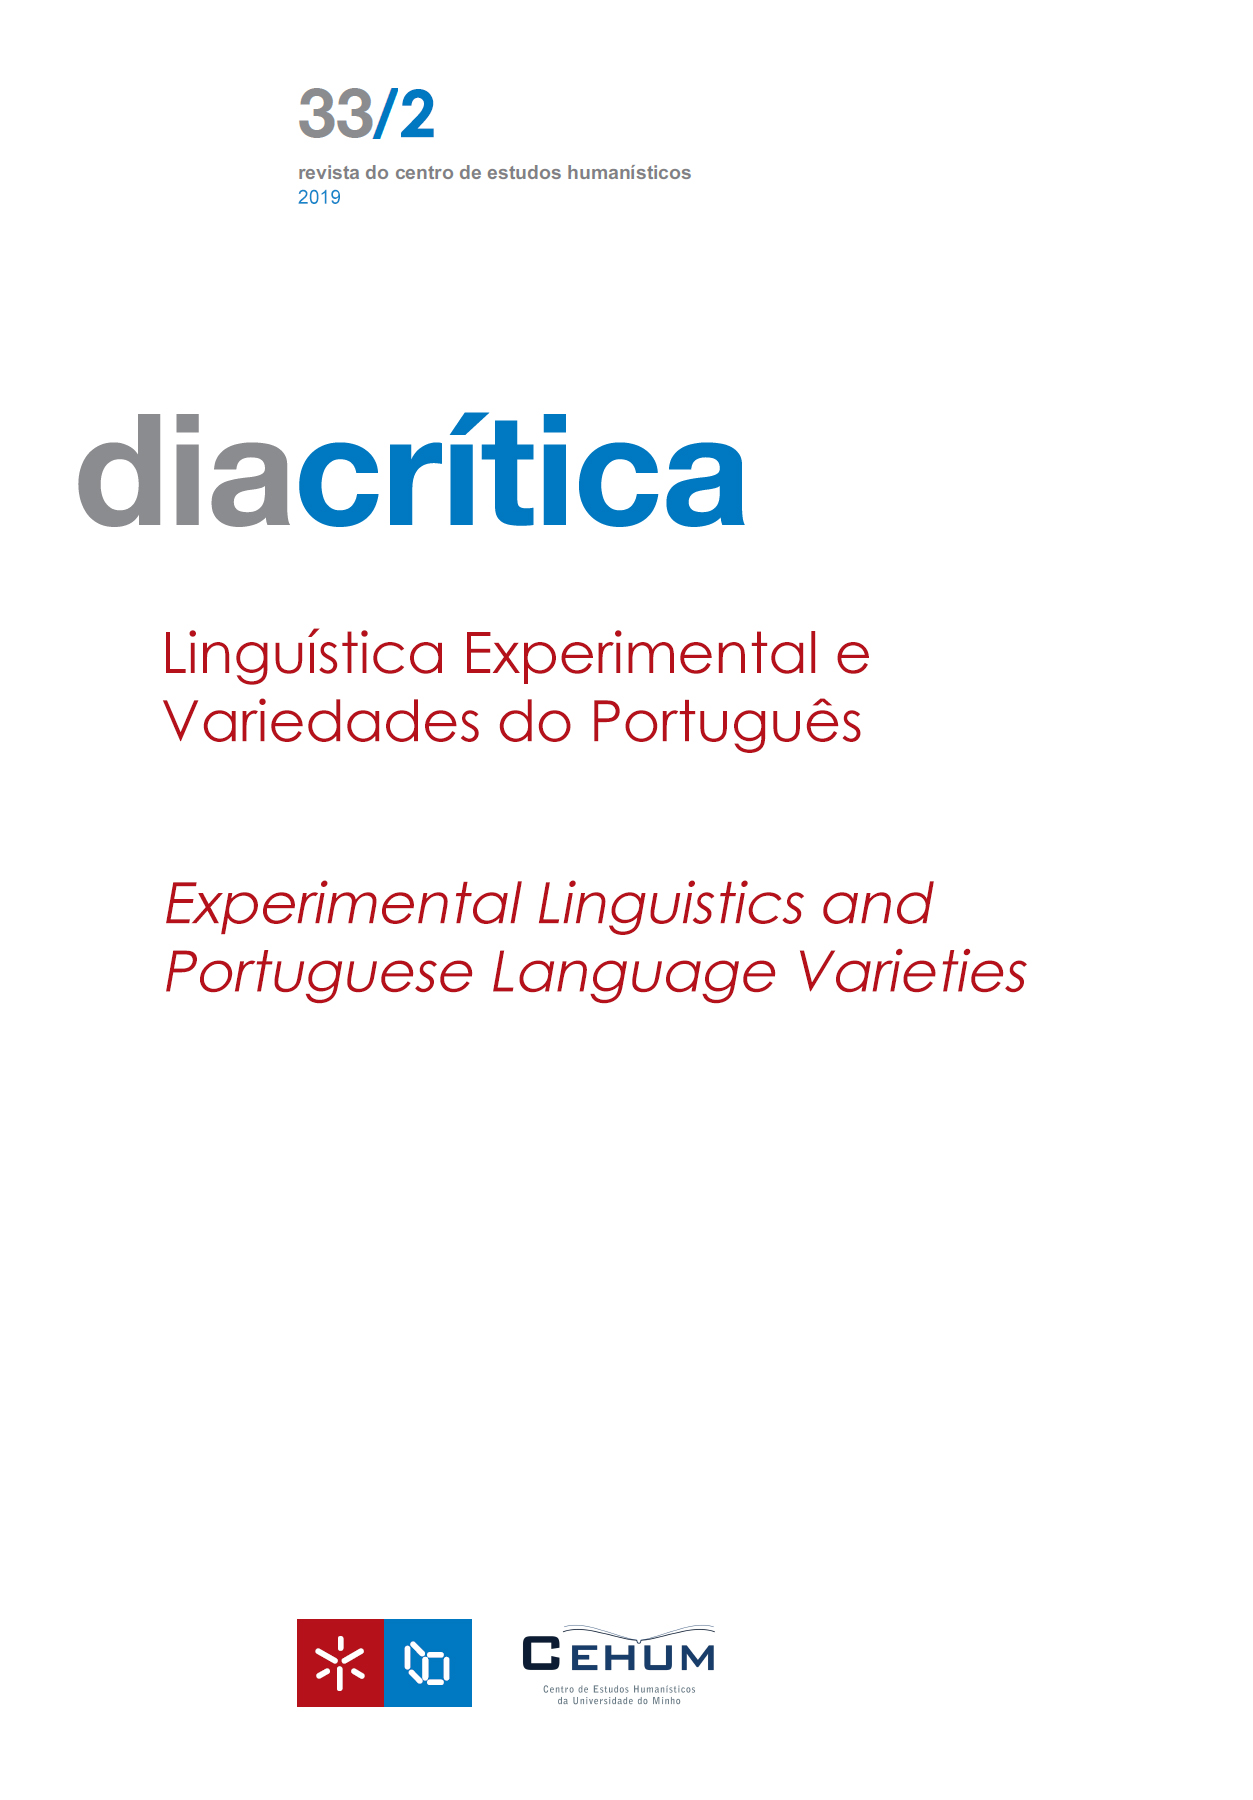 					View Vol. 33 No. 2 (2019): Experimental Linguistics and Portuguese Language Varieties
				